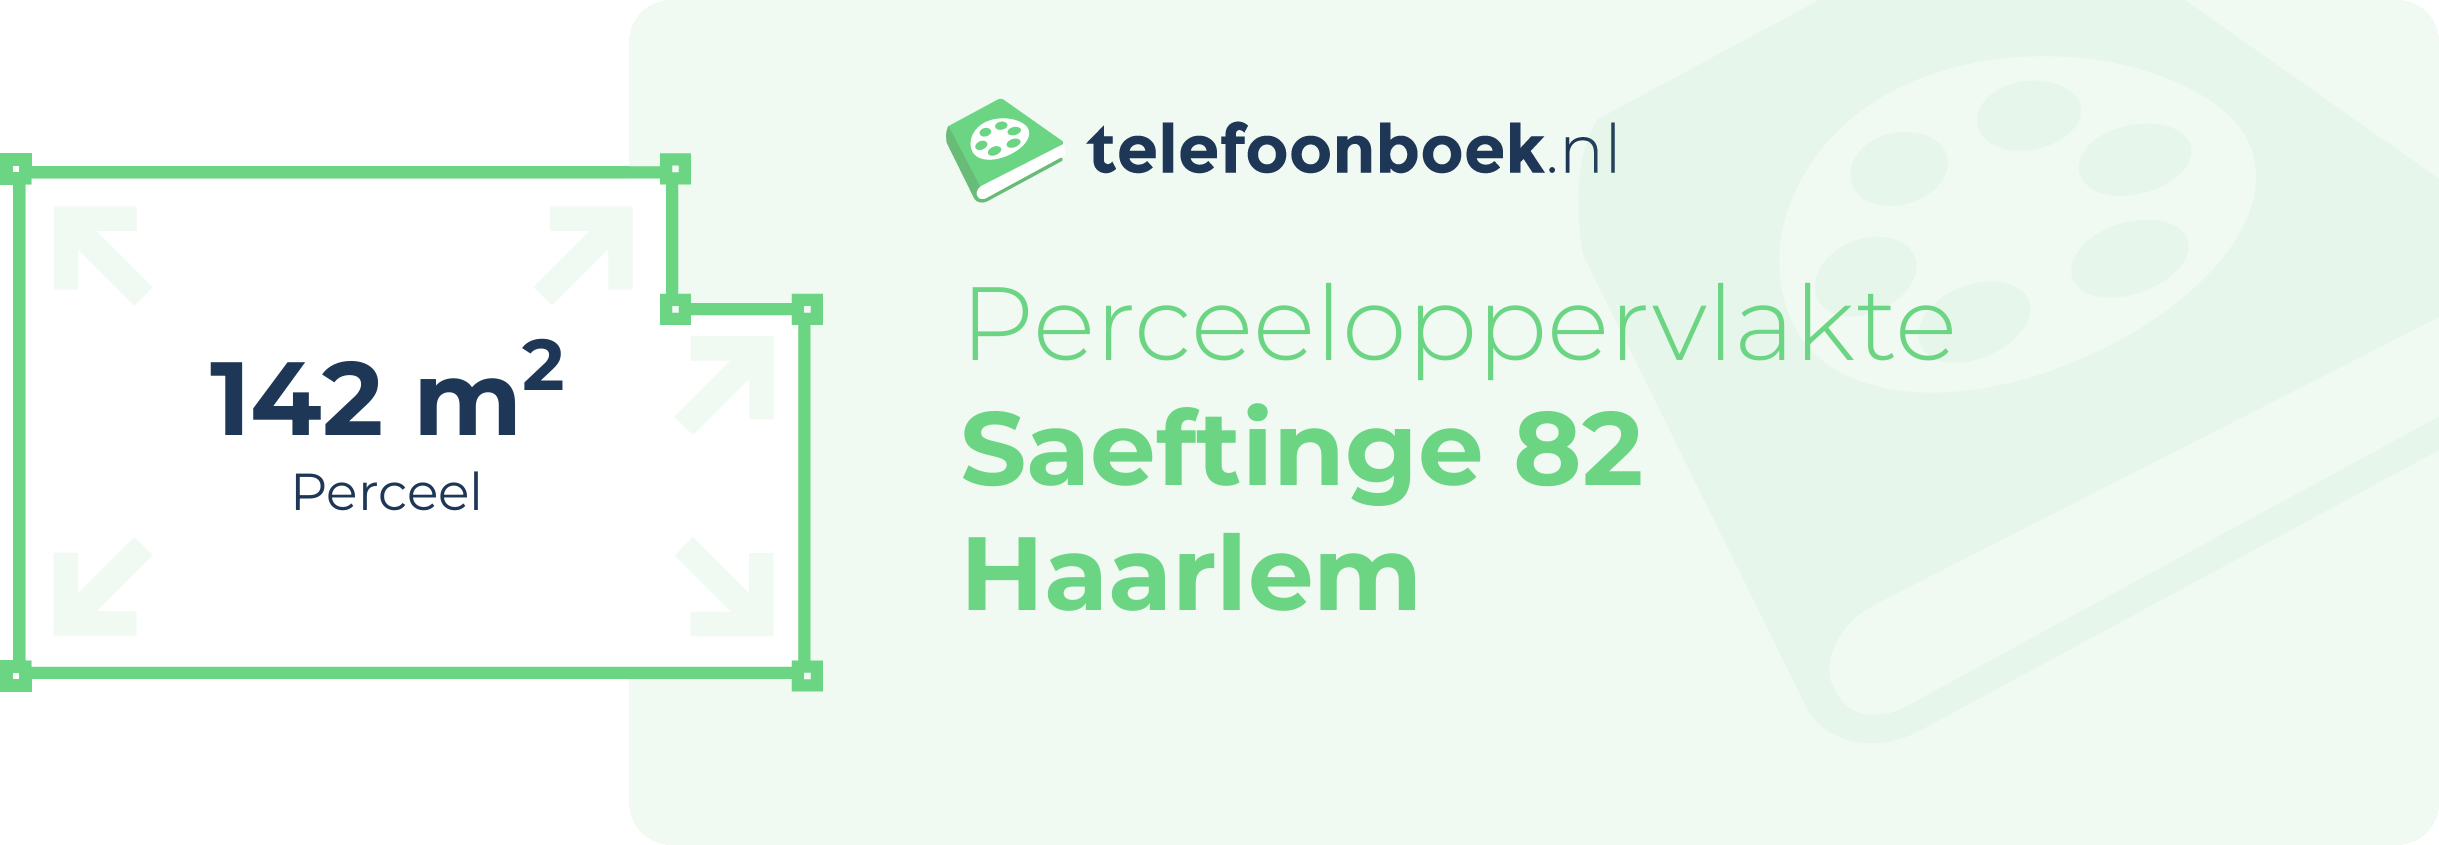 Perceeloppervlakte Saeftinge 82 Haarlem